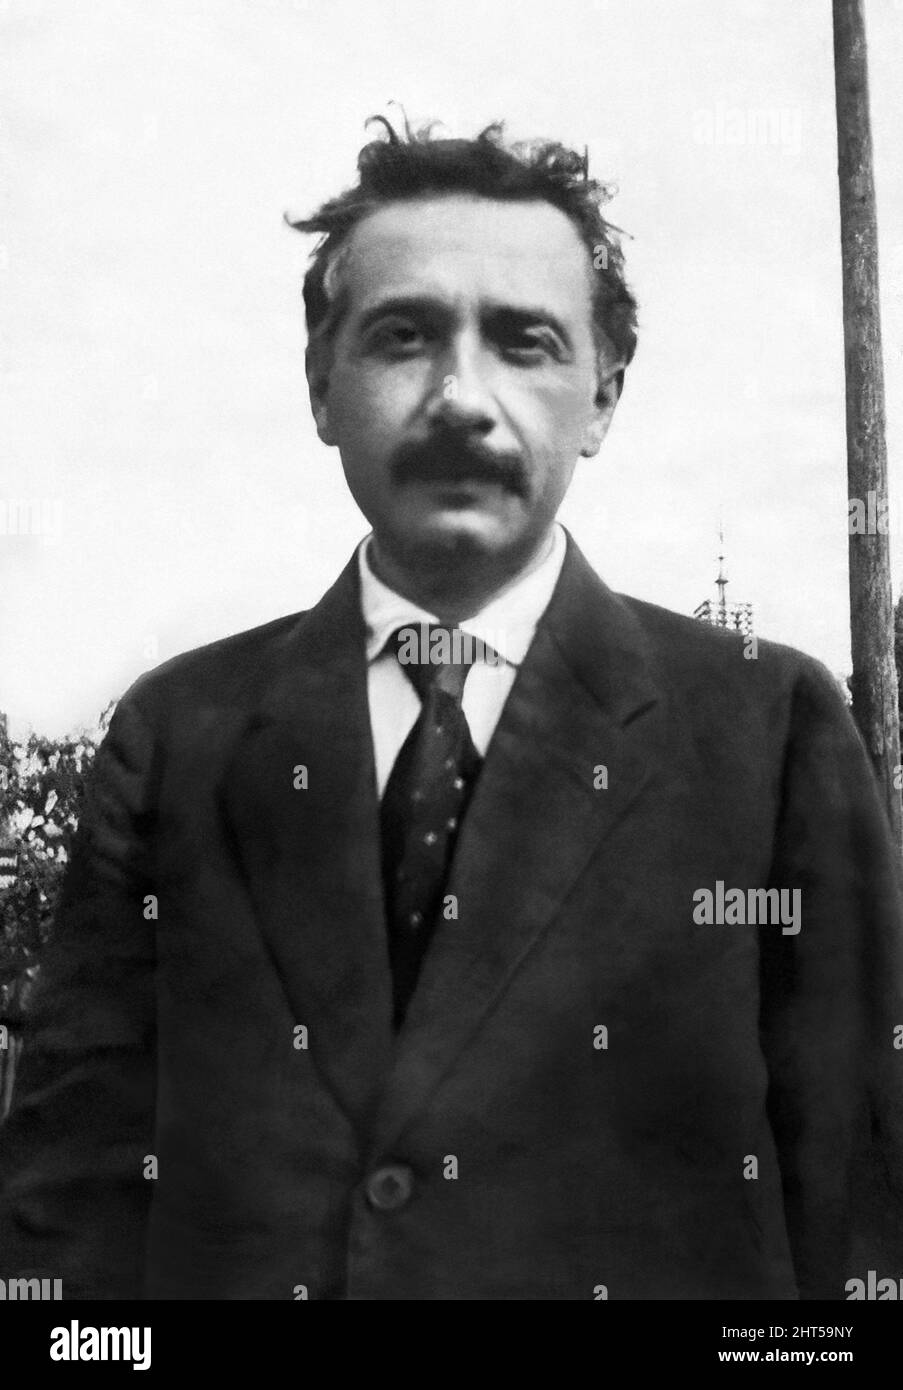 Albert Einstein (1879–1955), in Deutschland geborener theoretischer Physiker, der die Relativitätstheorie entwickelte und 1921 den Nobelpreis für Physik erhielt, in einem Außenportrait c1919. Stockfoto